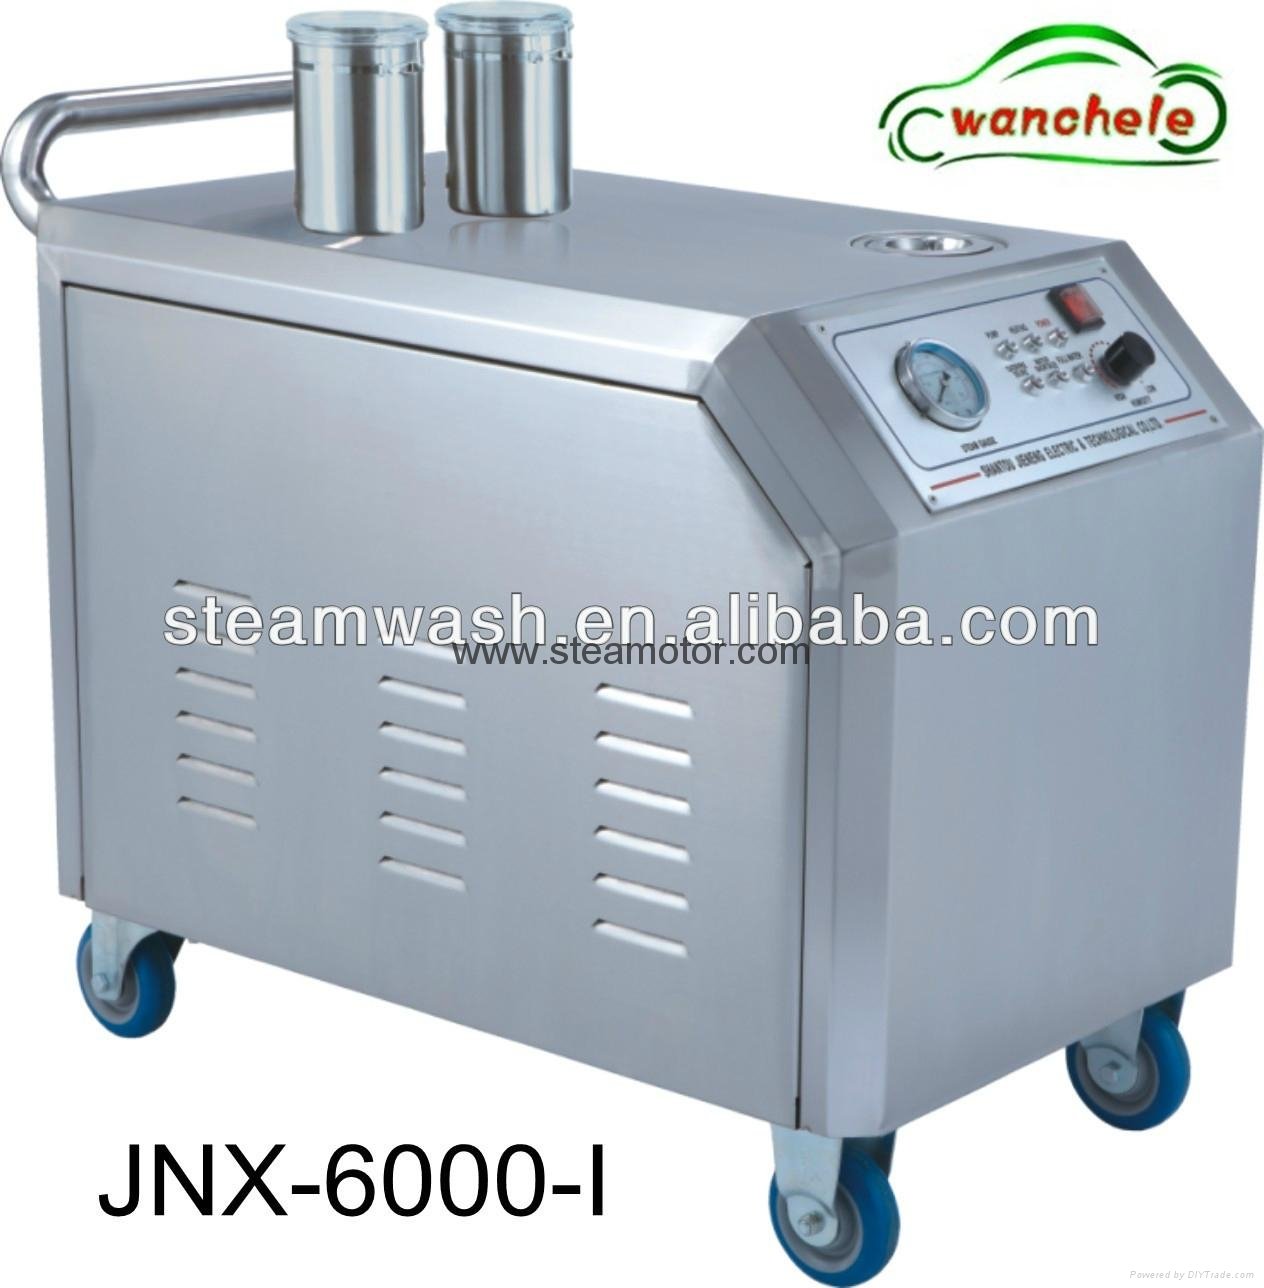 JNX-6000-I Steam Carwash Machine with Wax & Detergent System 4